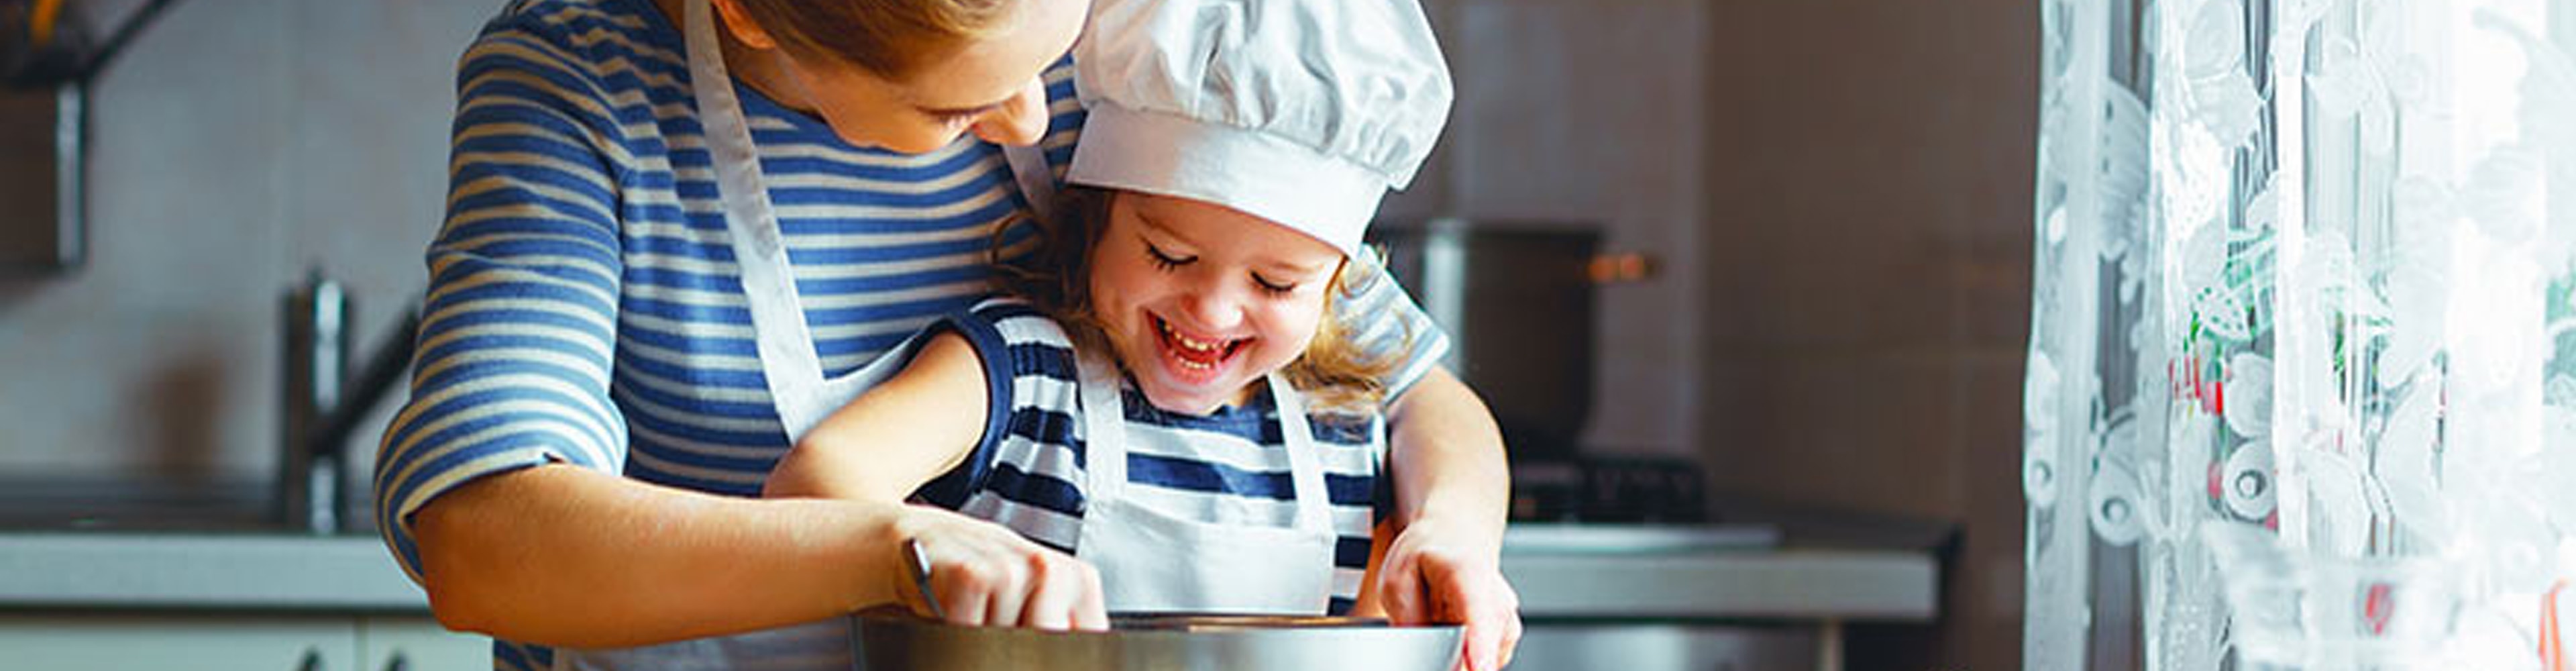 Wie geht stressfrei kochen mit Kindern?